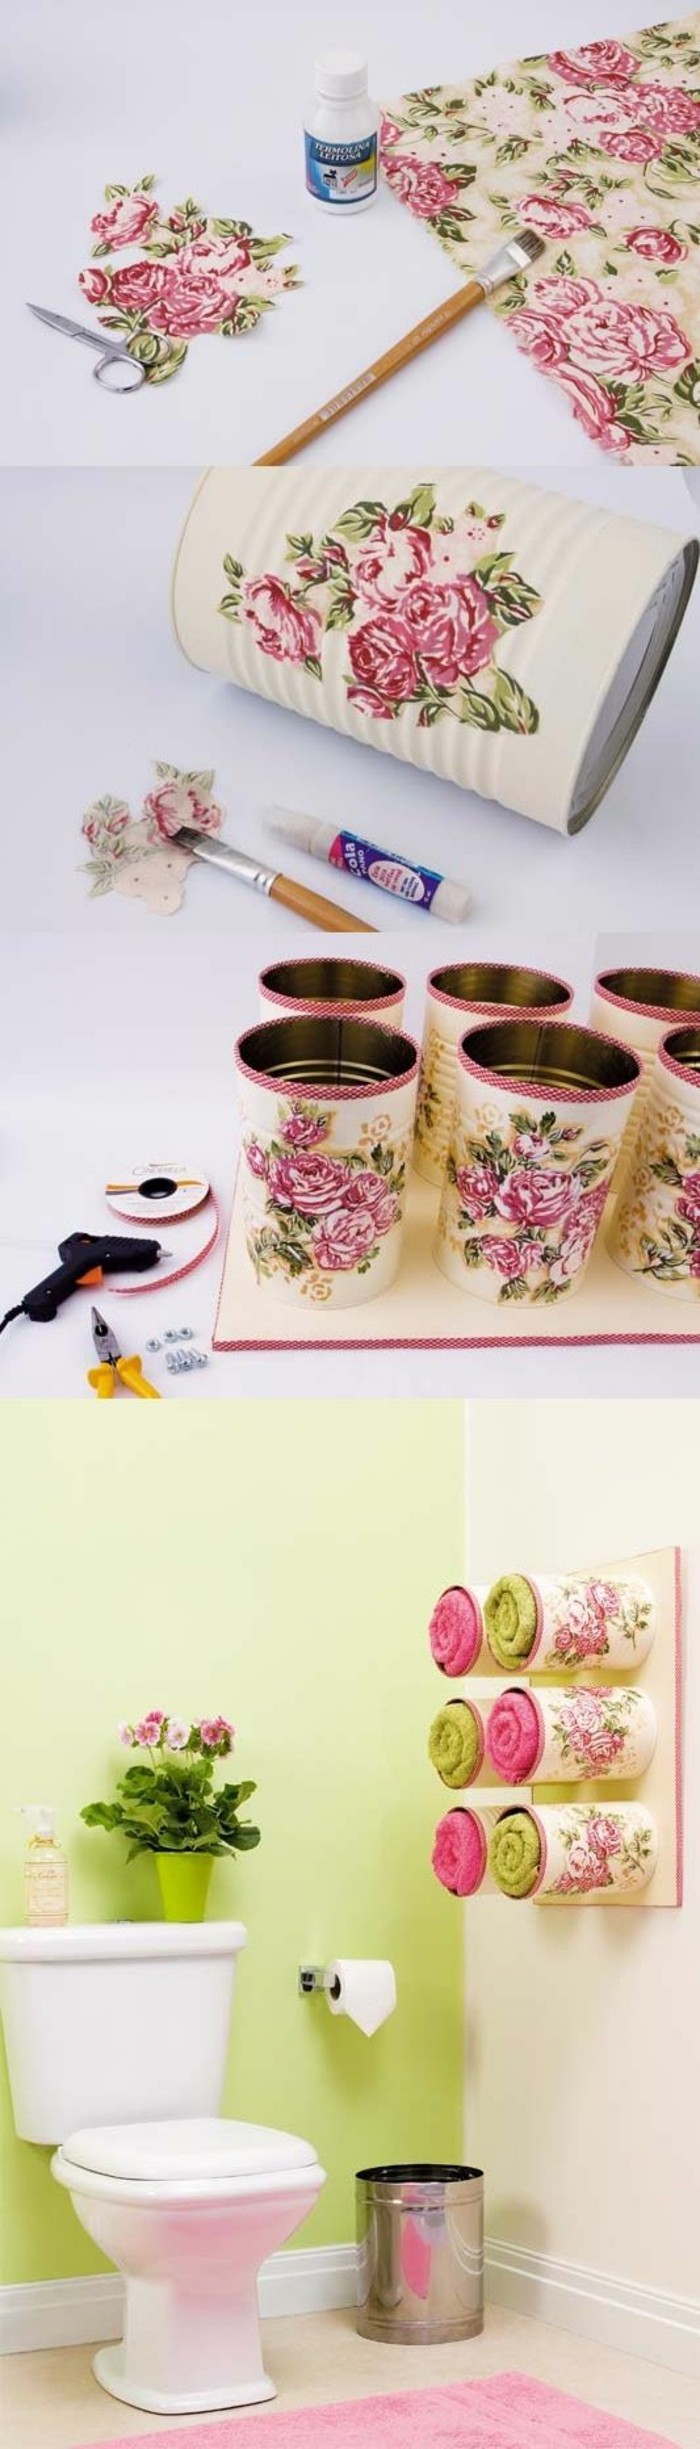 adorable decoración con decoupage para tu baño, latas decoradas con motivos florales paso a paso 